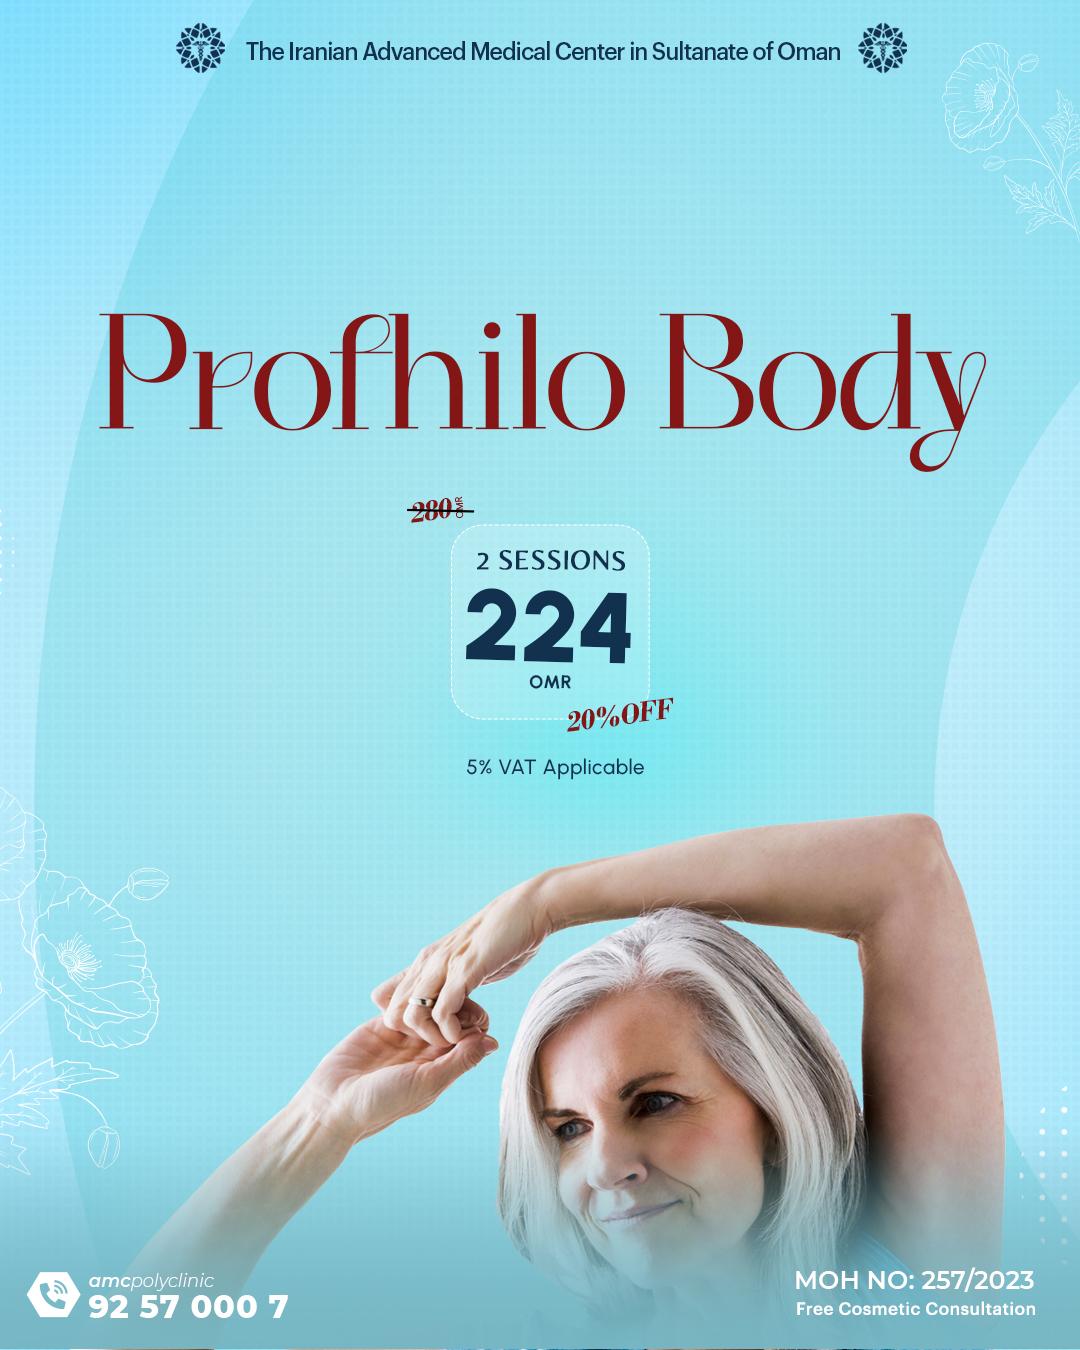 Profhilo Body